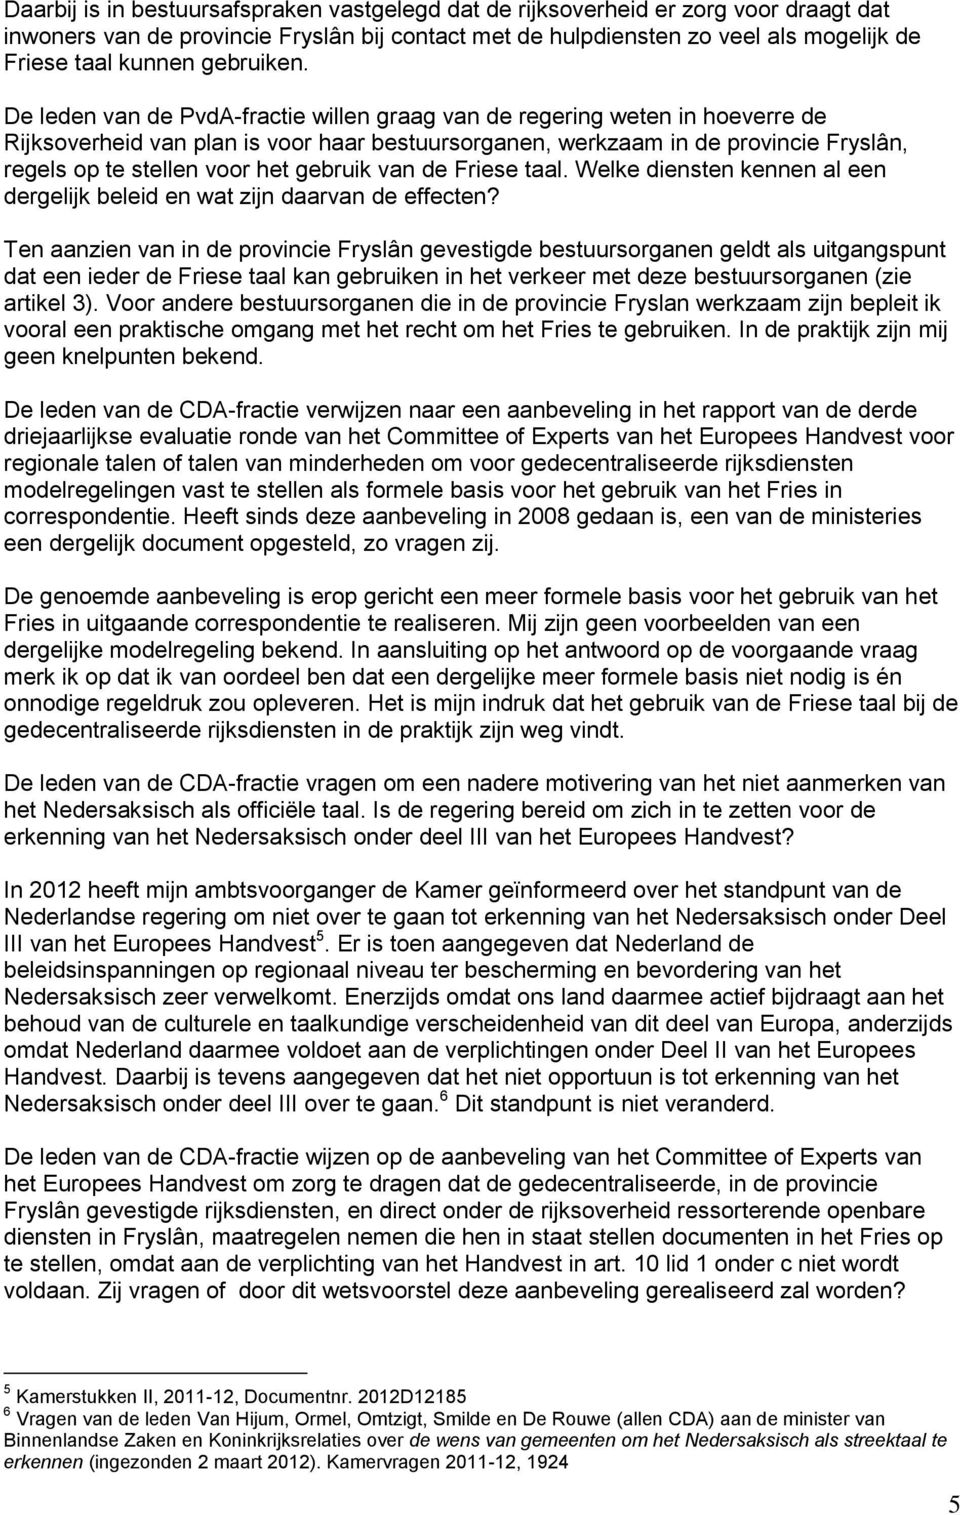 De leden van de PvdA-fractie willen graag van de regering weten in hoeverre de Rijksoverheid van plan is voor haar bestuursorganen, werkzaam in de provincie Fryslân, regels op te stellen voor het